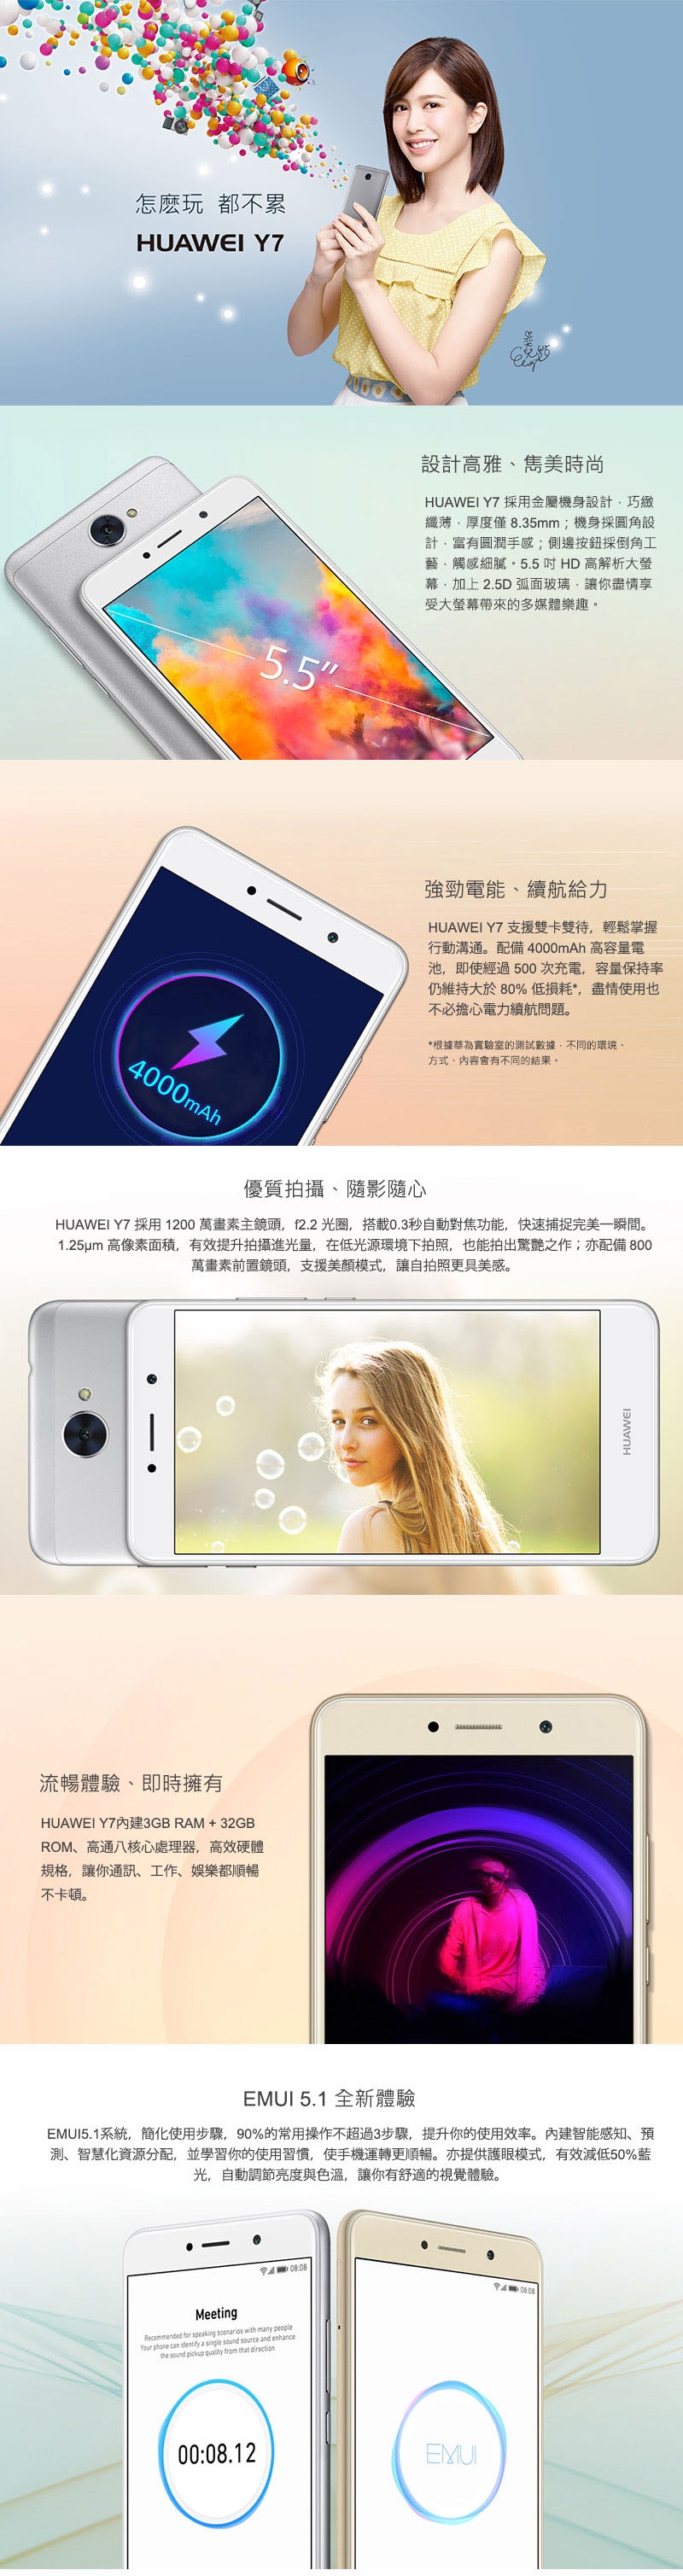 HUAWEI Y7 (3G/32G) 5.5吋智慧手機